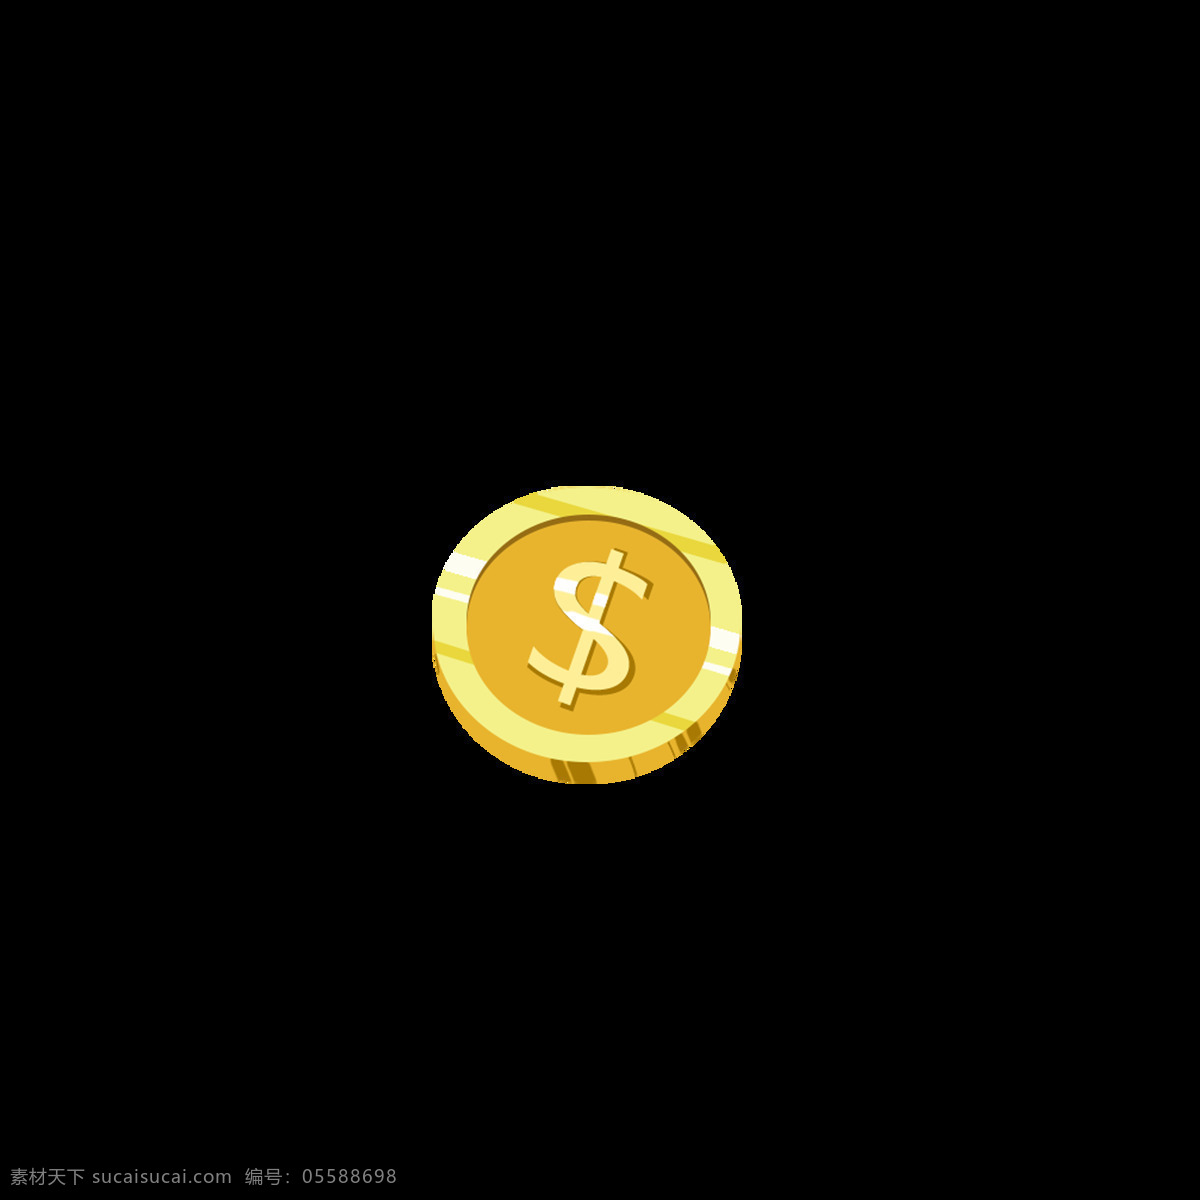 金币 矢量 免抠 美元 金色 金币矢量 金币金币 硬币 金钱 简约 财富 装饰金币